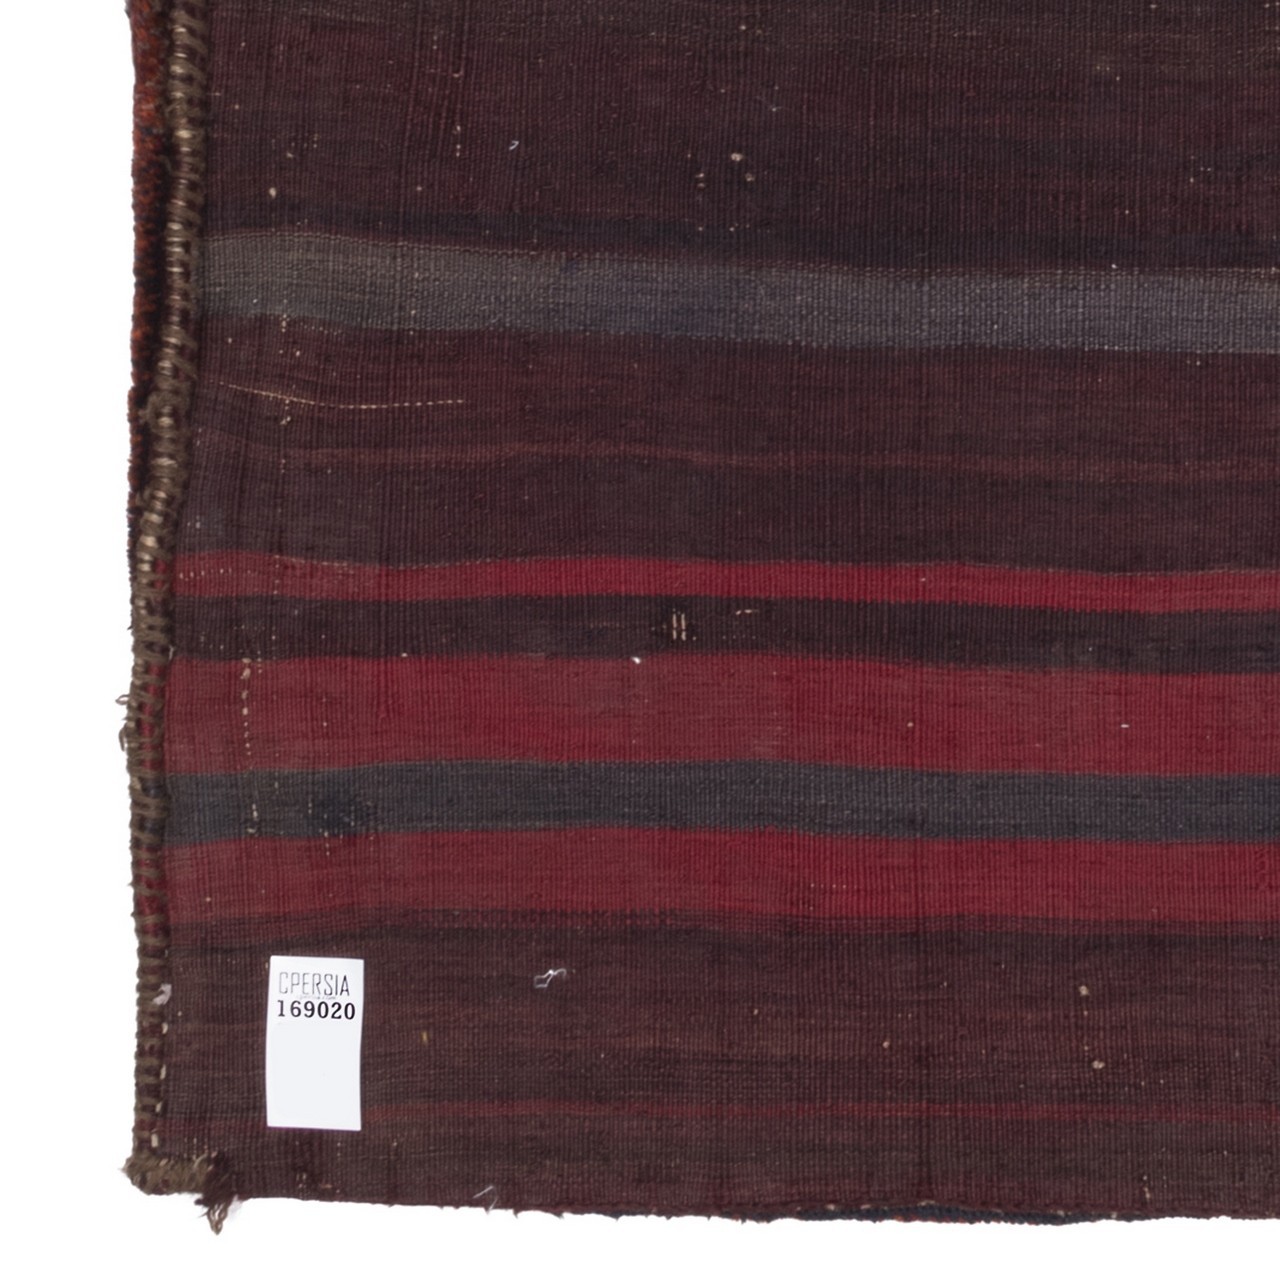 خورجین دستباف قدیمی سیرجان کد 169020